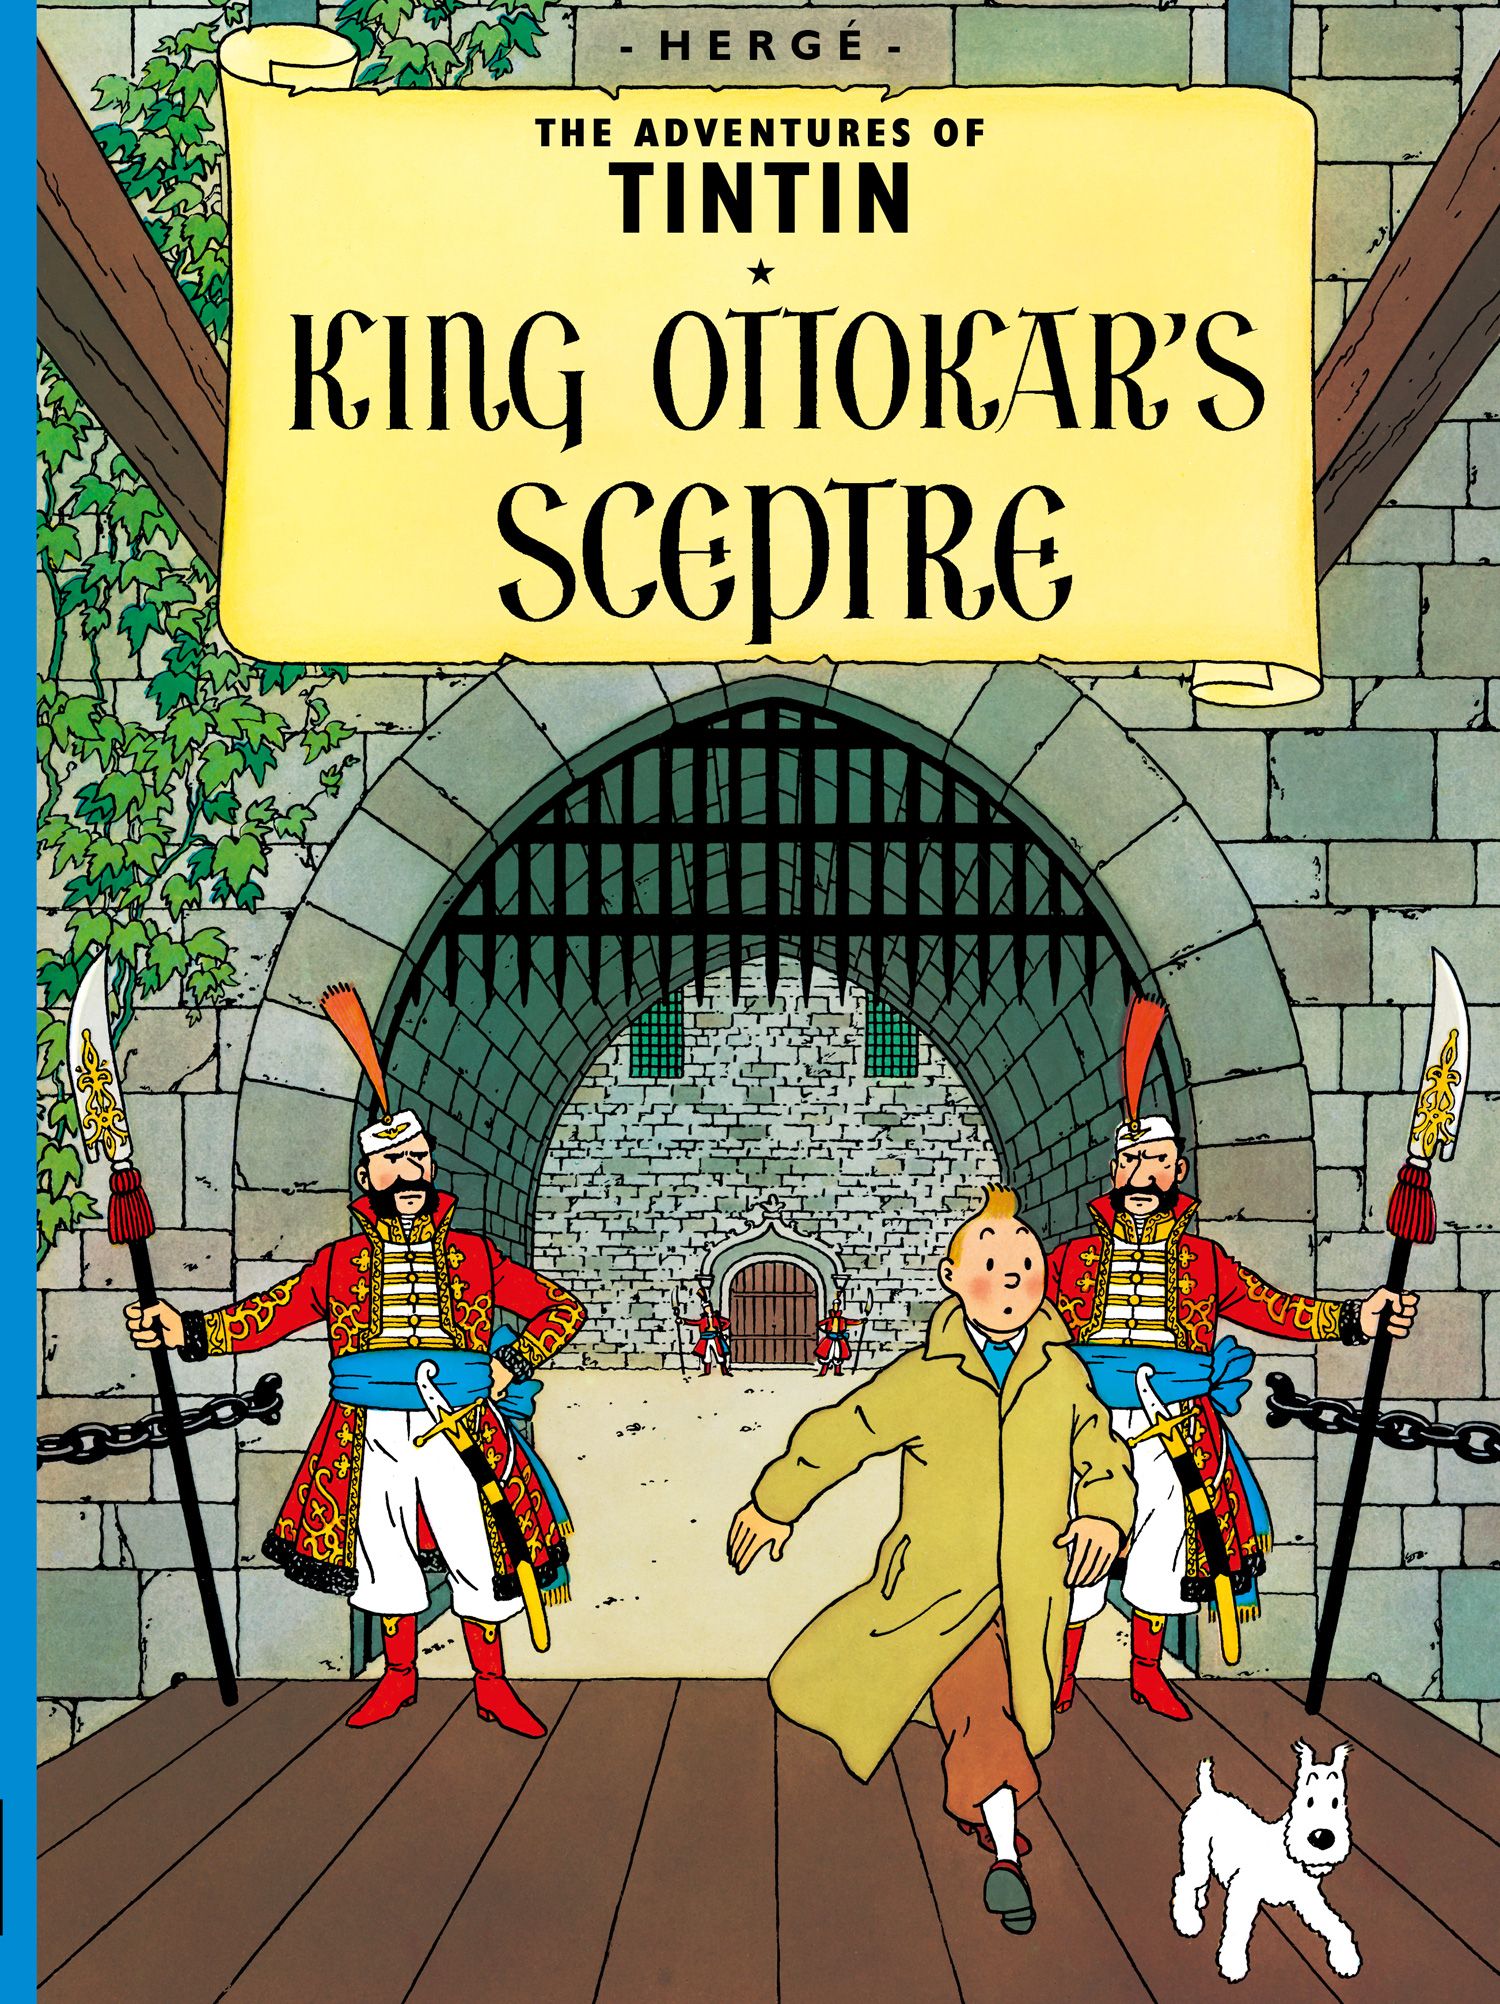 The Adventures of Tintin - King Ottokar's Sceptre (The Adventures of Tintin)  - HarperReach